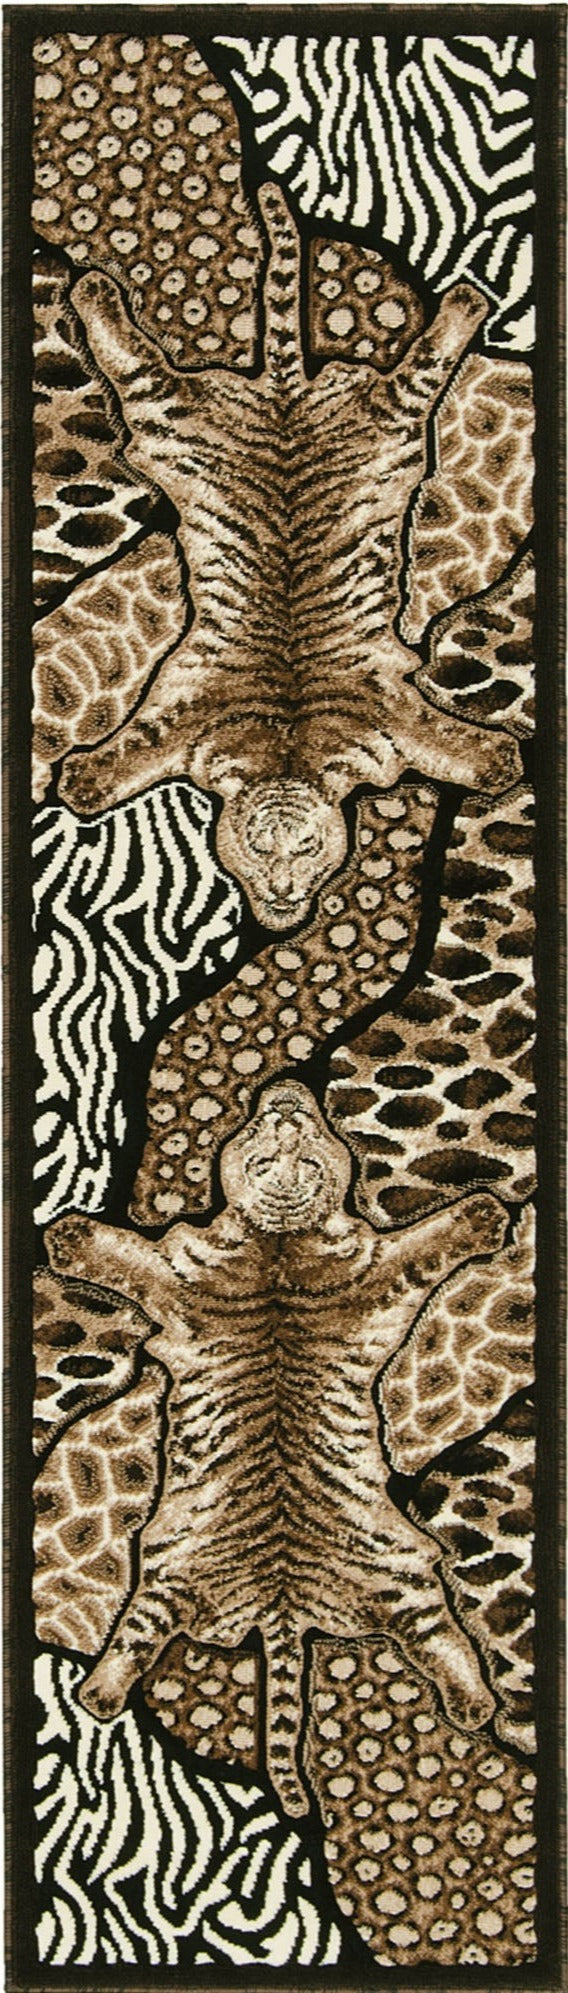 American cover design / Persian weavers Skinz-72 Animal Print Rug